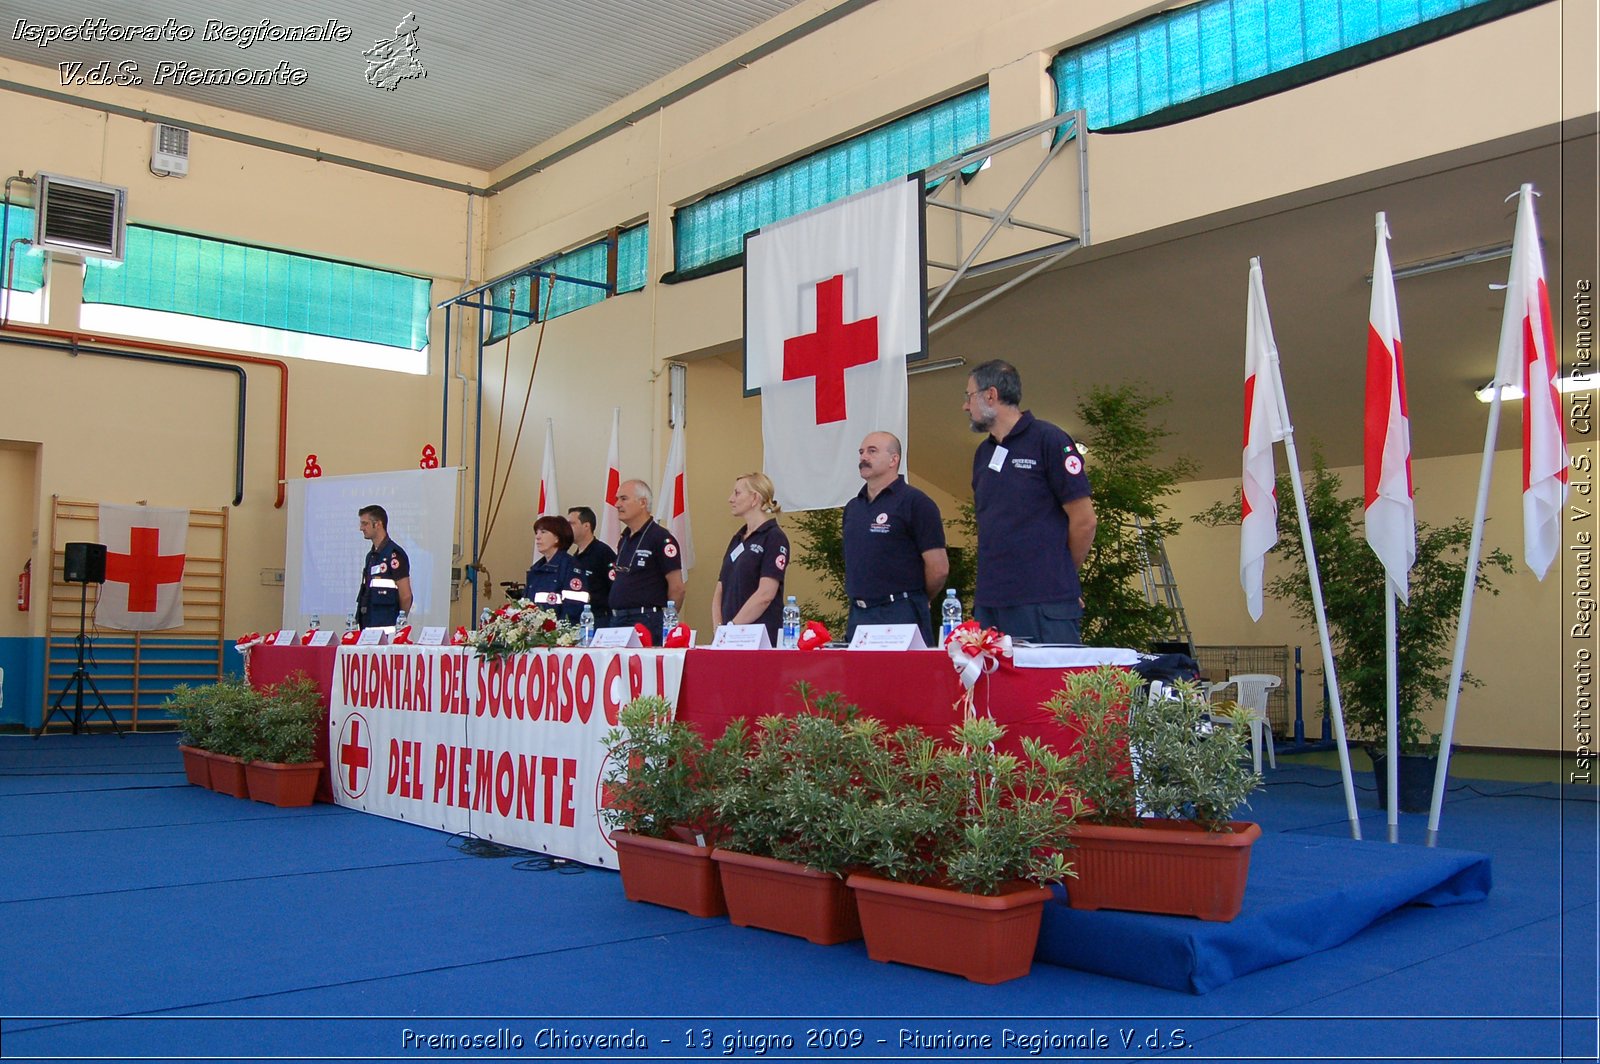 Premosello Chiovenda - 13 e 14 giugno 2009 - Riunione Regionale V.d.S. & 4a Festa Regionale CRI Piemonte -  Croce Rossa Italiana - Ispettorato Regionale Volontari del Soccorso Piemonte